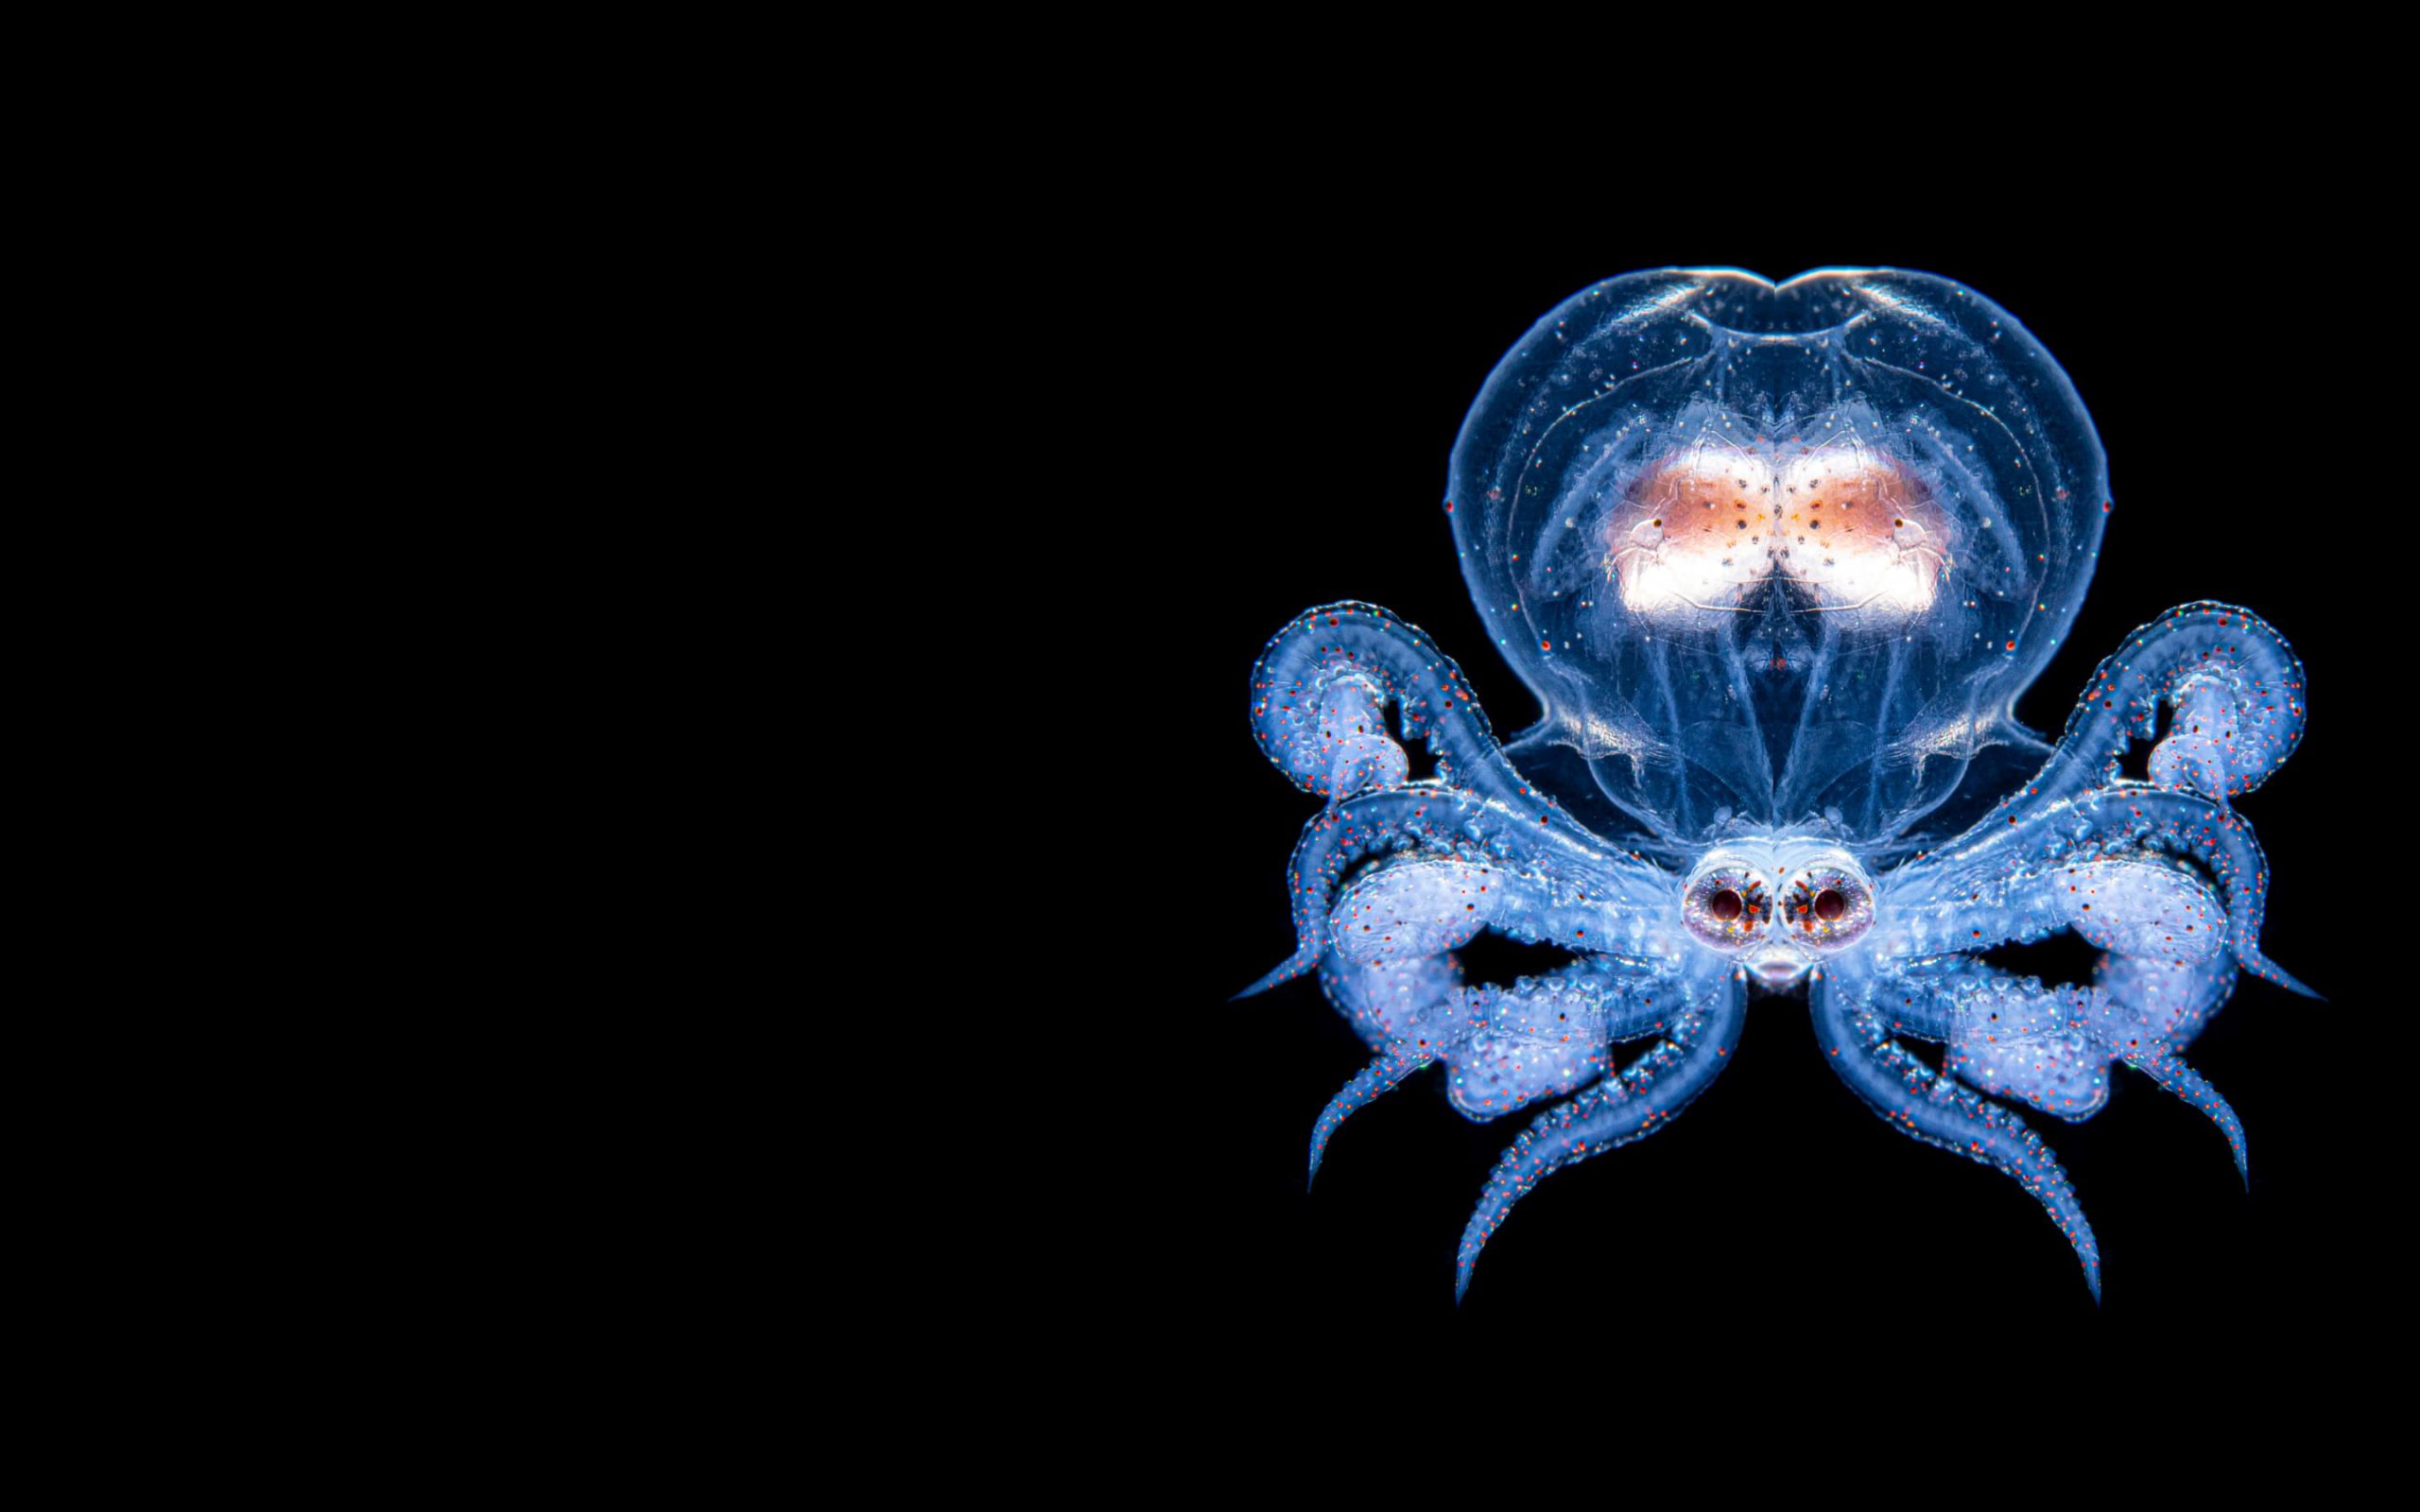 Créature marine dans les profondeurs de l'océan